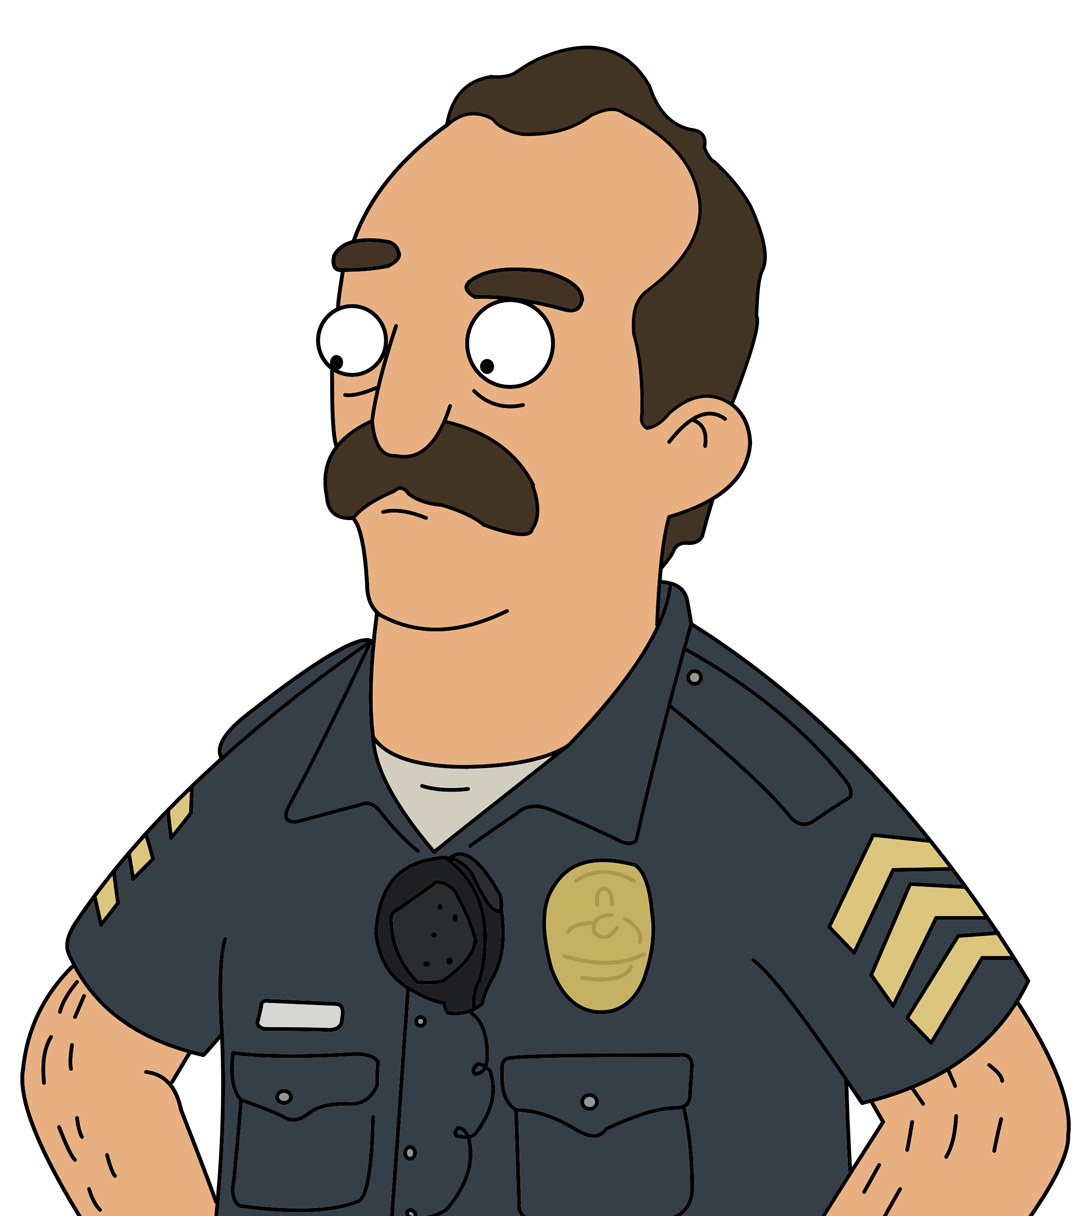 Officer McGill